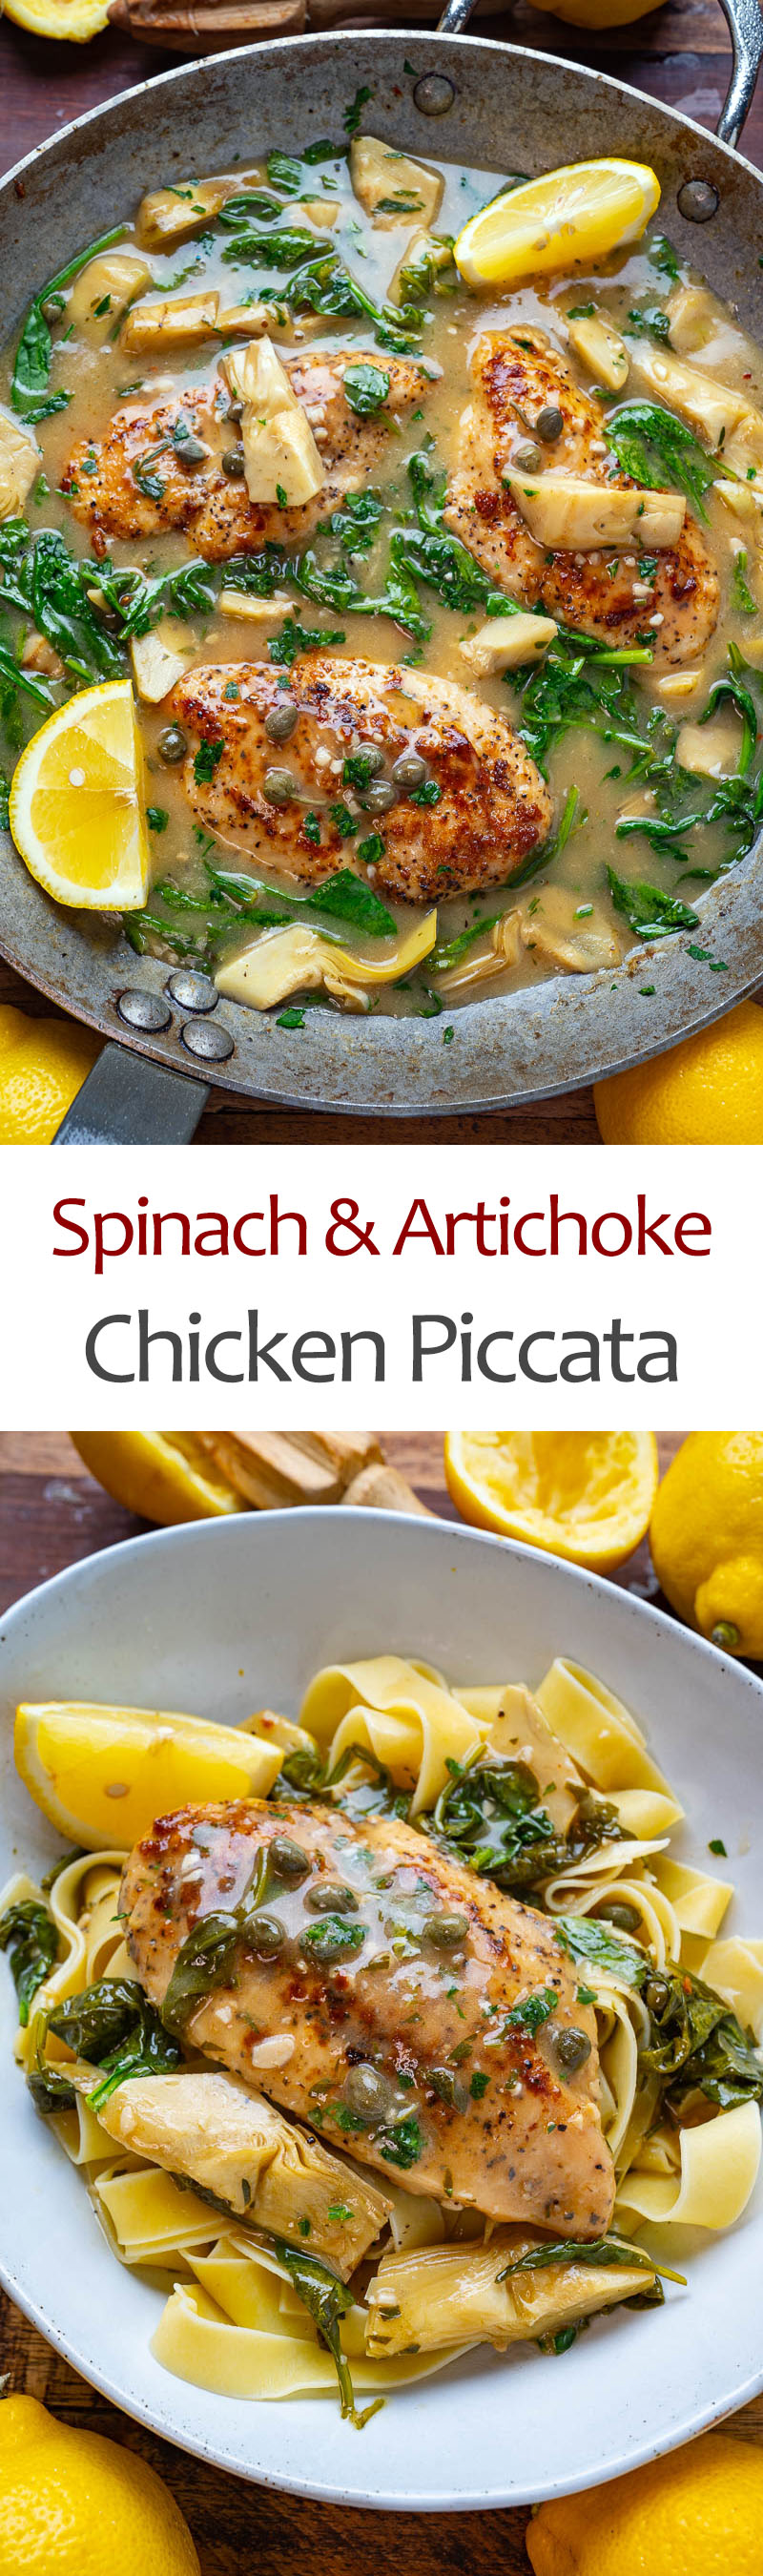 Spinach and Artichoke Chicken Piccata